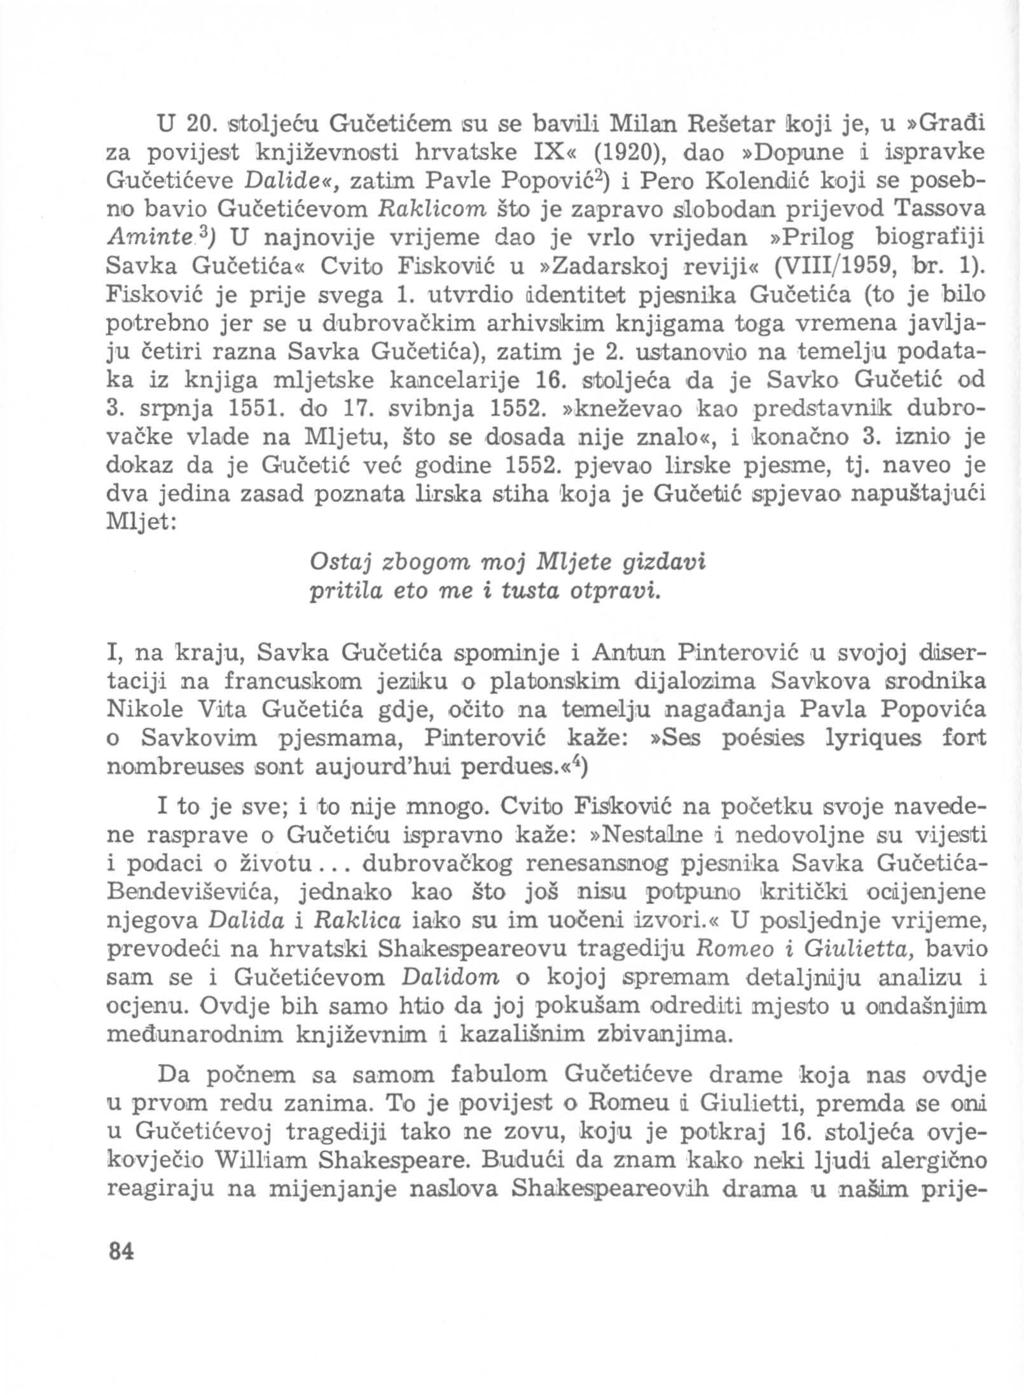 U 20. Sltoljeeu Guceticem su se bavtili Mila:n Resetar!koji je, u»gradi za povijest knjizevnosti hrva.tske IX«(1920), dao»dopune li.